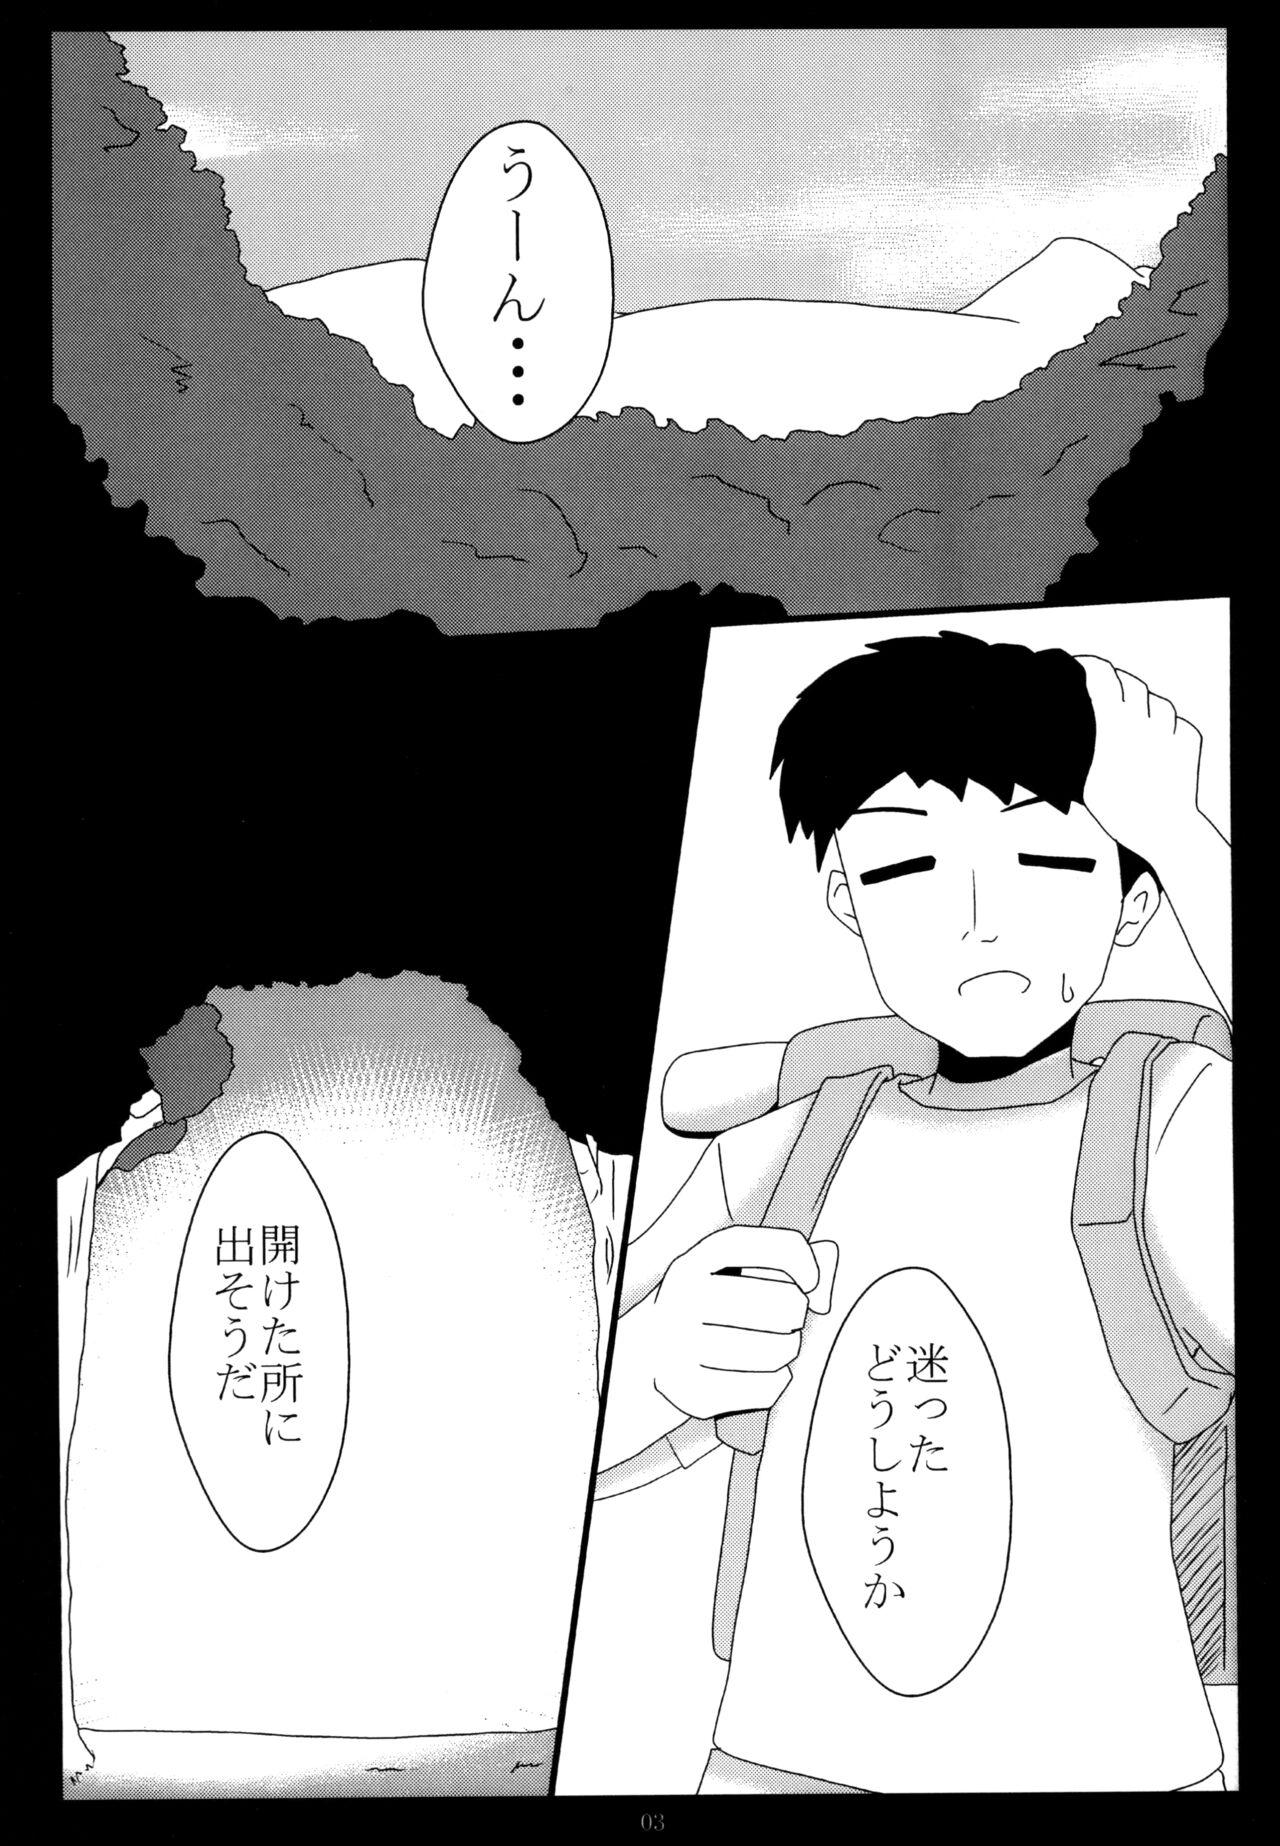 Mallu Miwaku no Hane Yasume - Yu gi oh Funny - Page 3